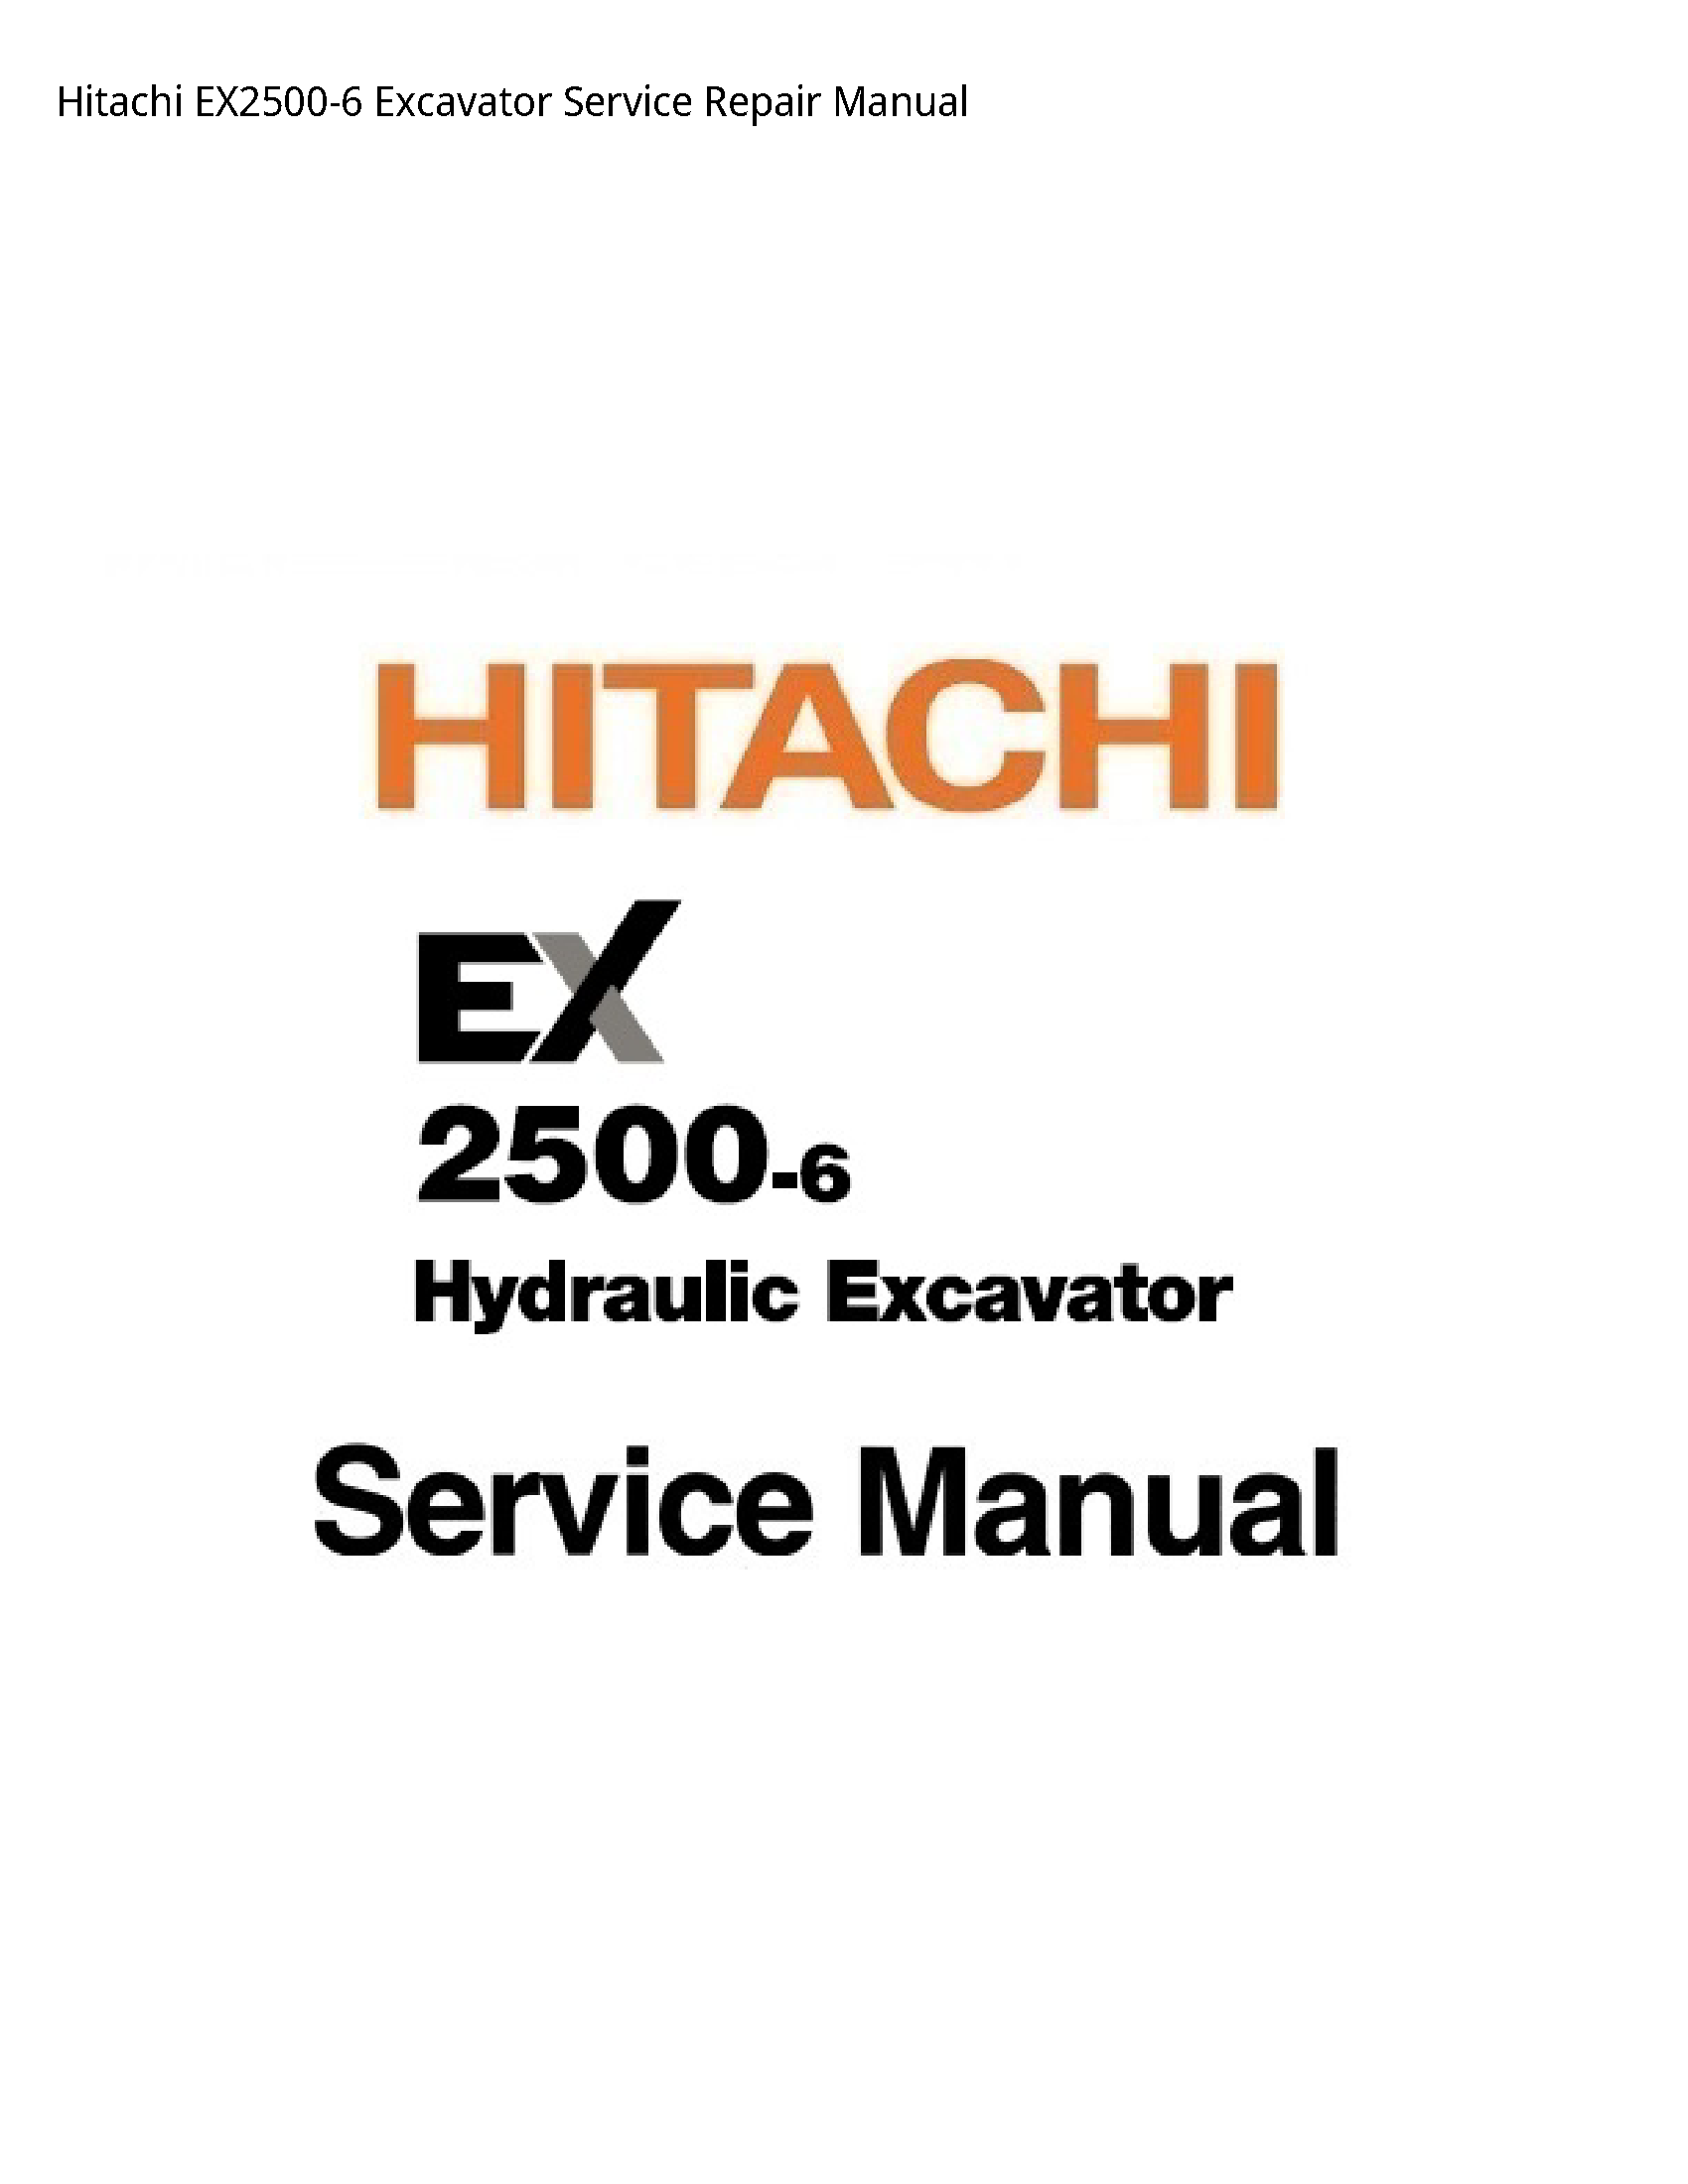 Hitachi EX2500-6 Excavator manual